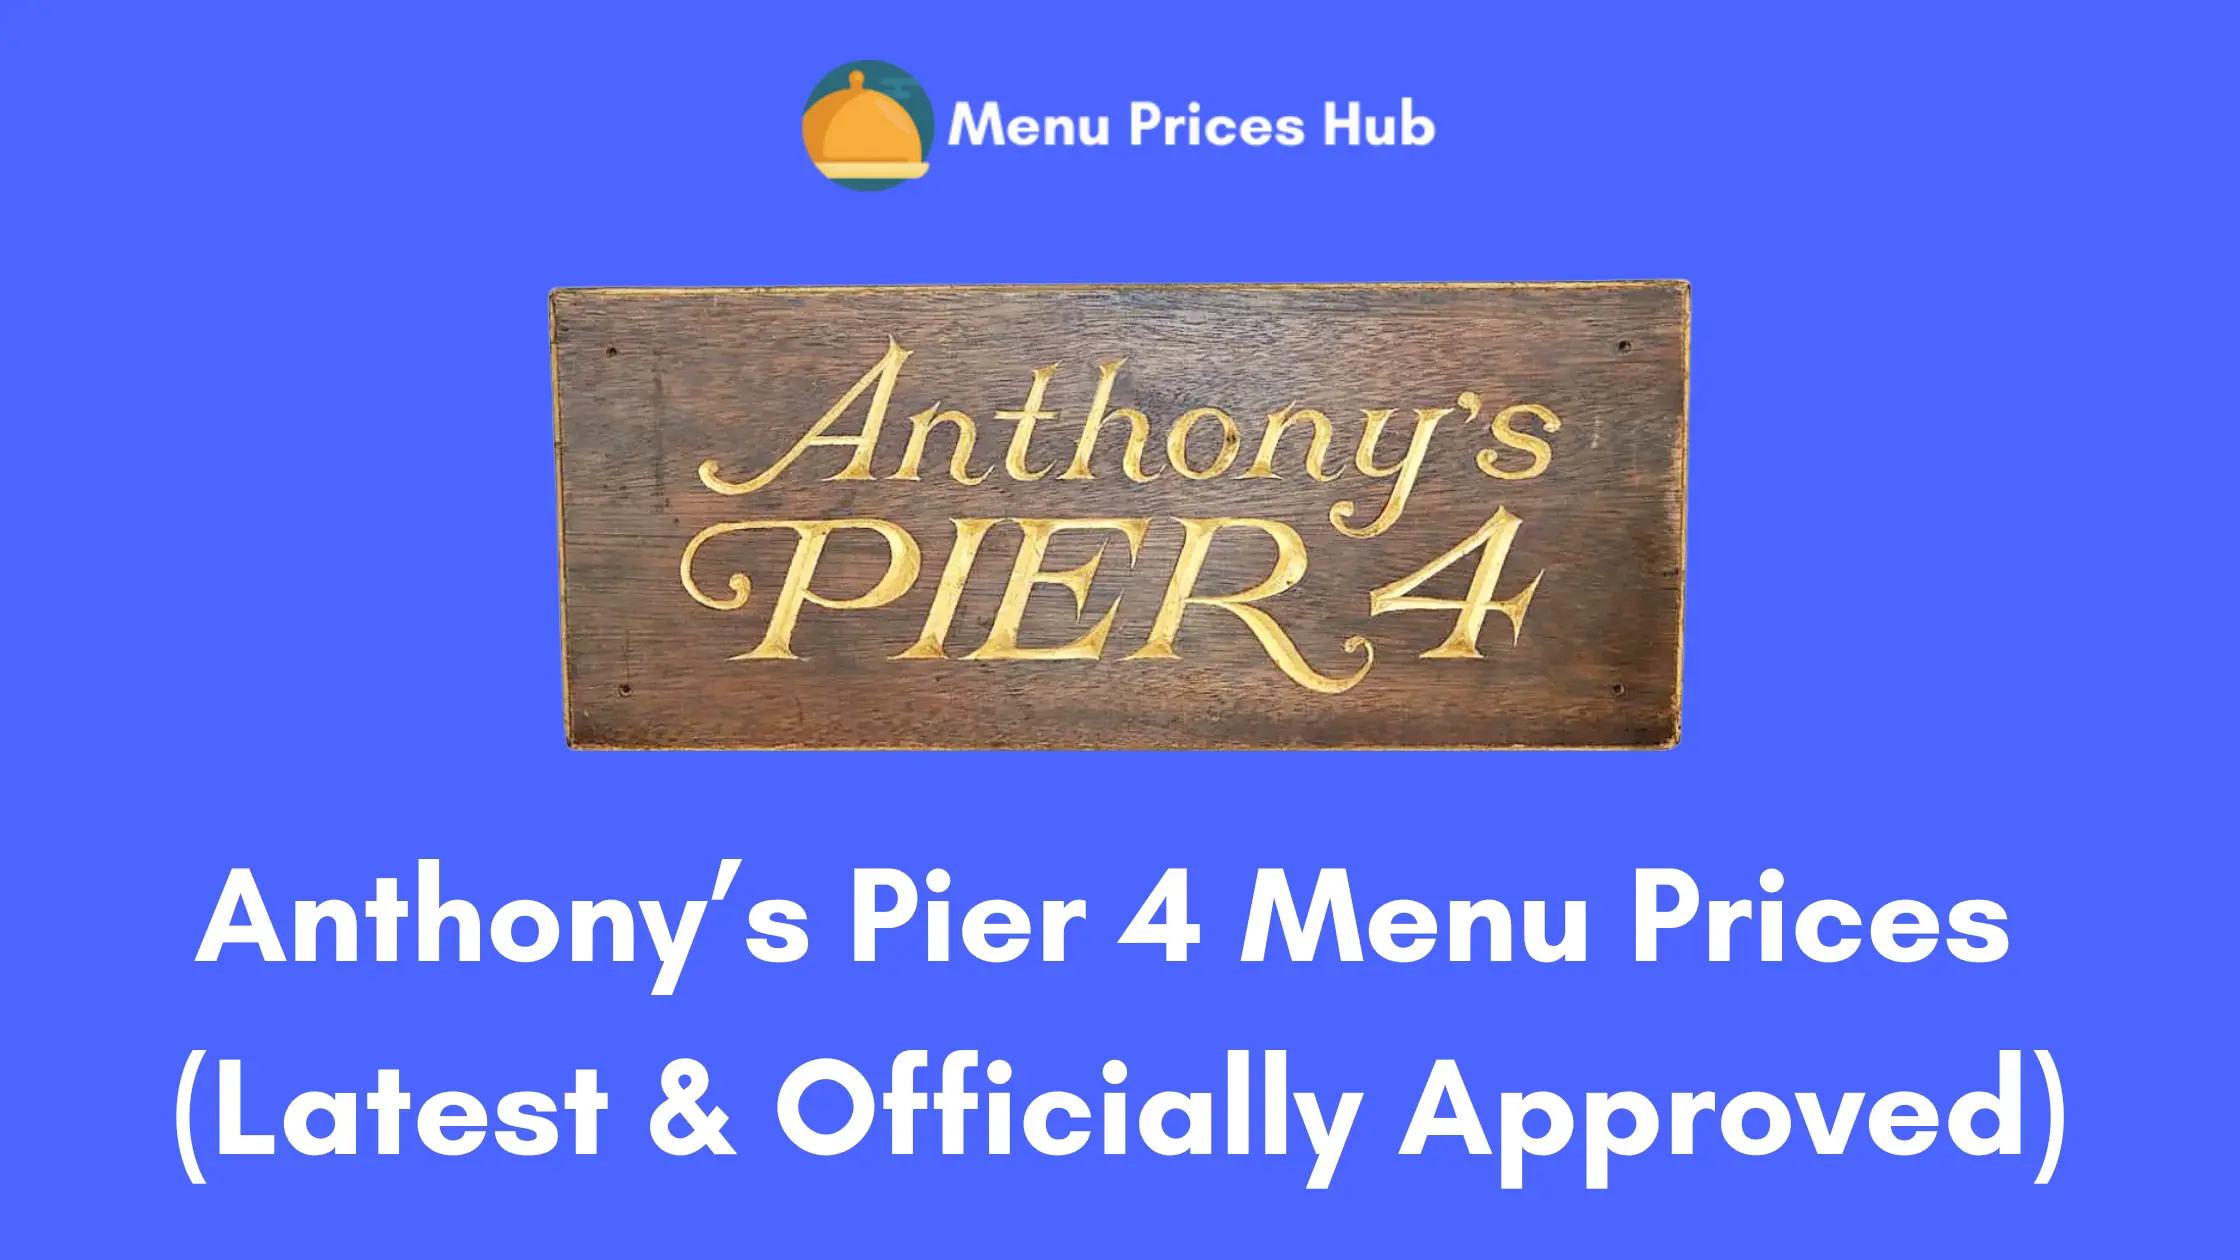 anthonys pier 4 menu prices